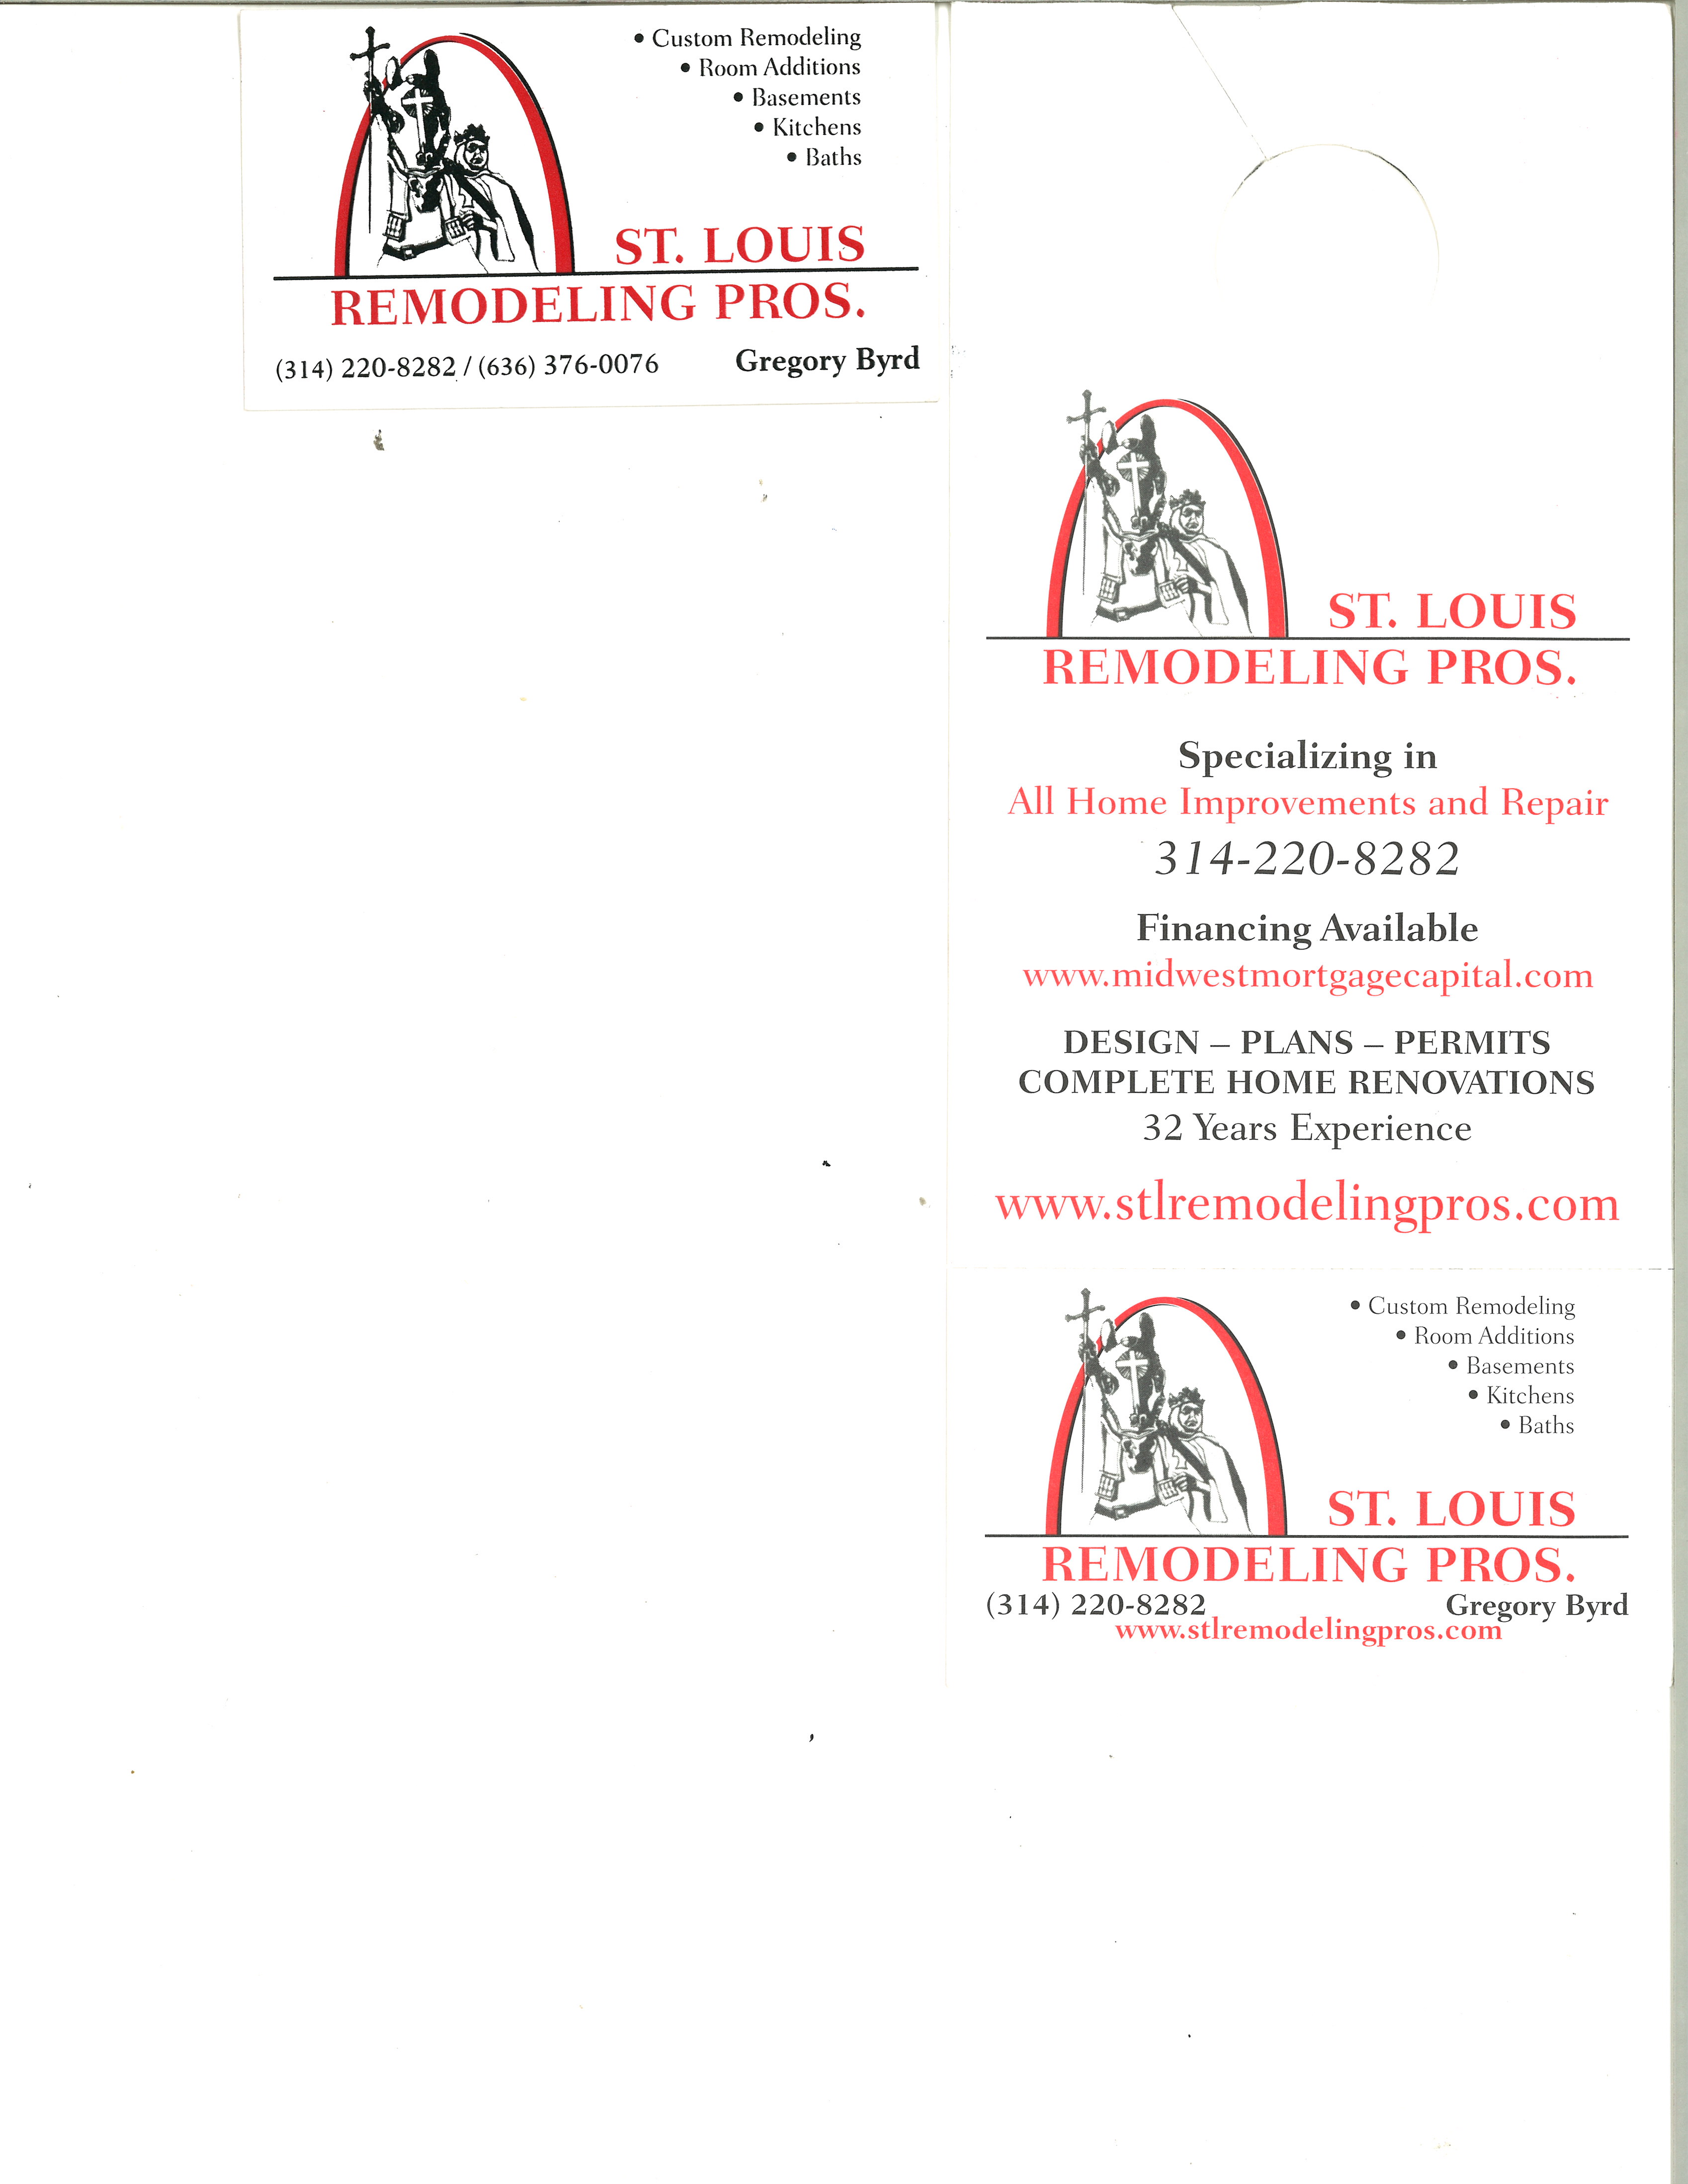 St. Louis Remodeling Pros. Logo